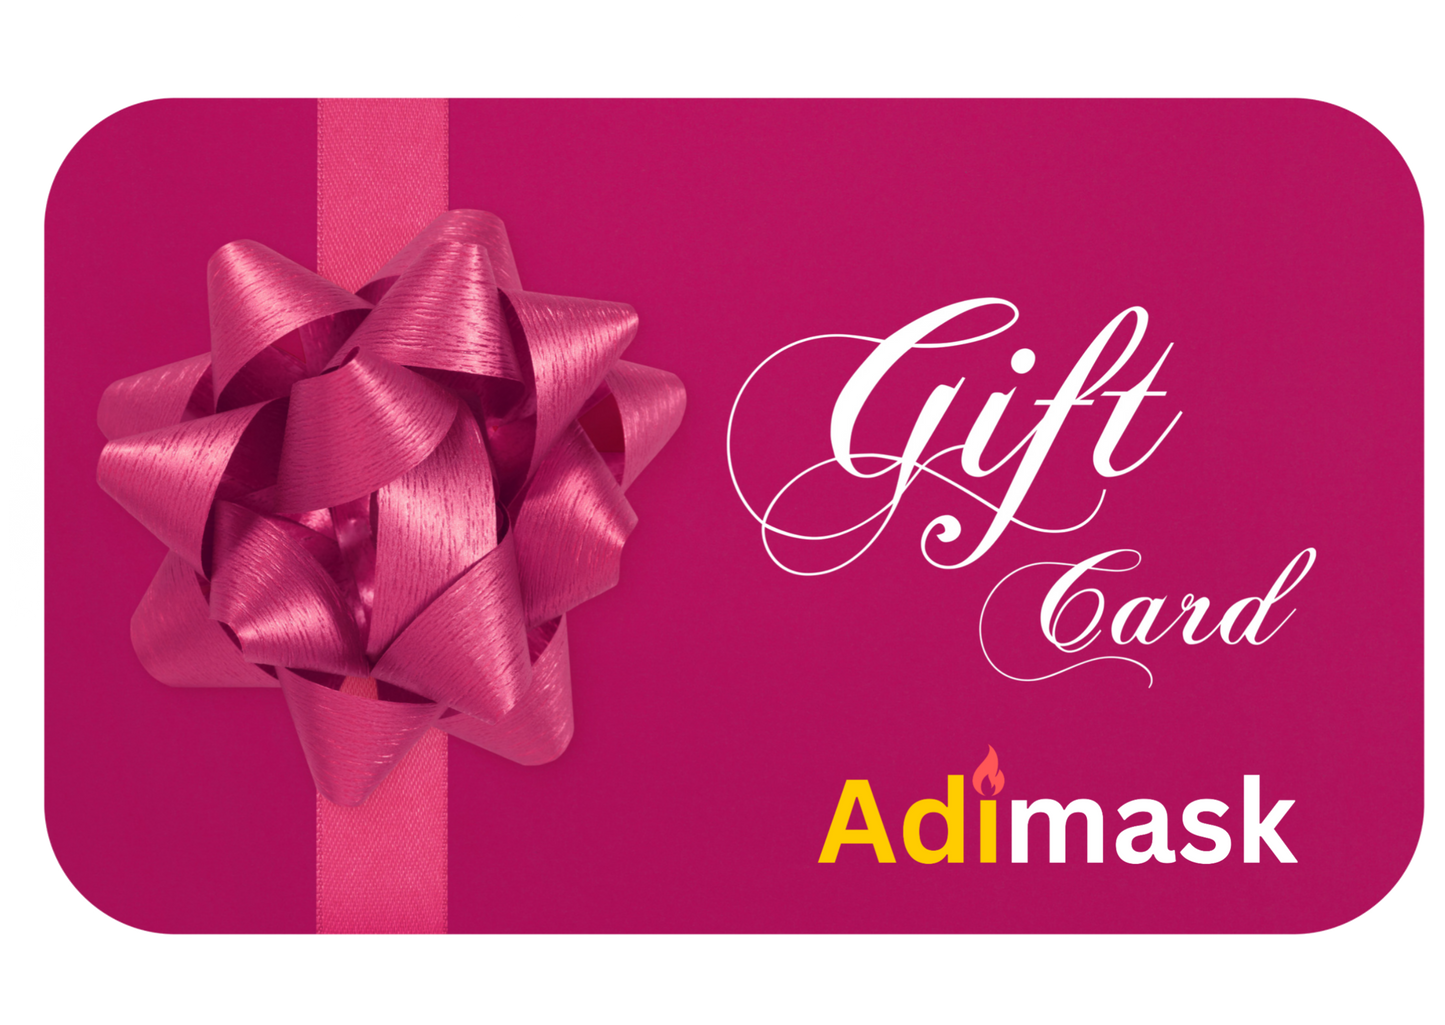 Adimask Basic Gift Card